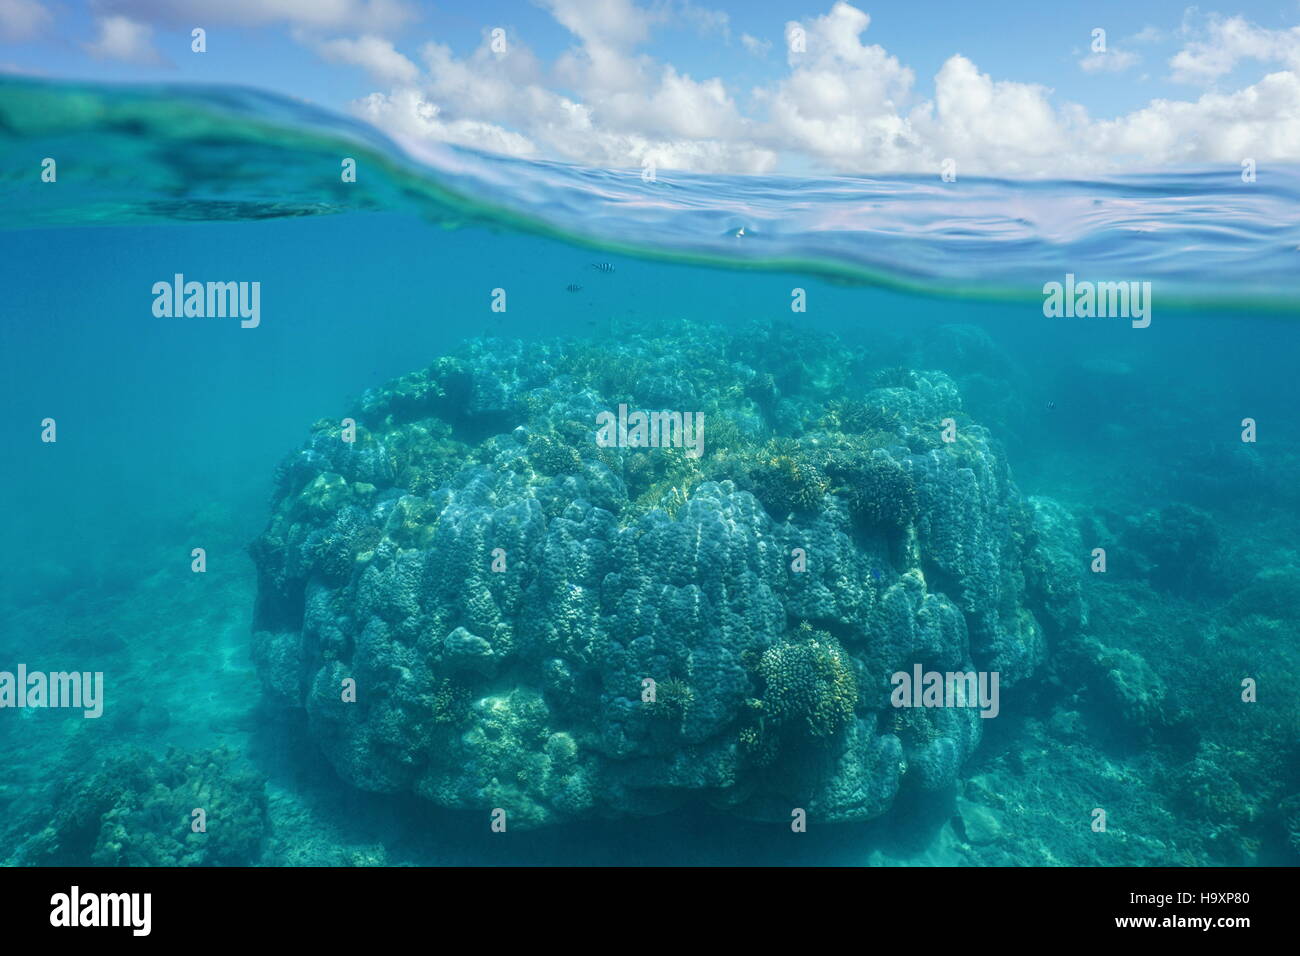 Über und unter Wasser, massive Stony Coral unter Wasser und blauer Himmel mit Wolken geteilt durch Wasserlinie, Neu-Kaledonien, Pazifik Stockfoto